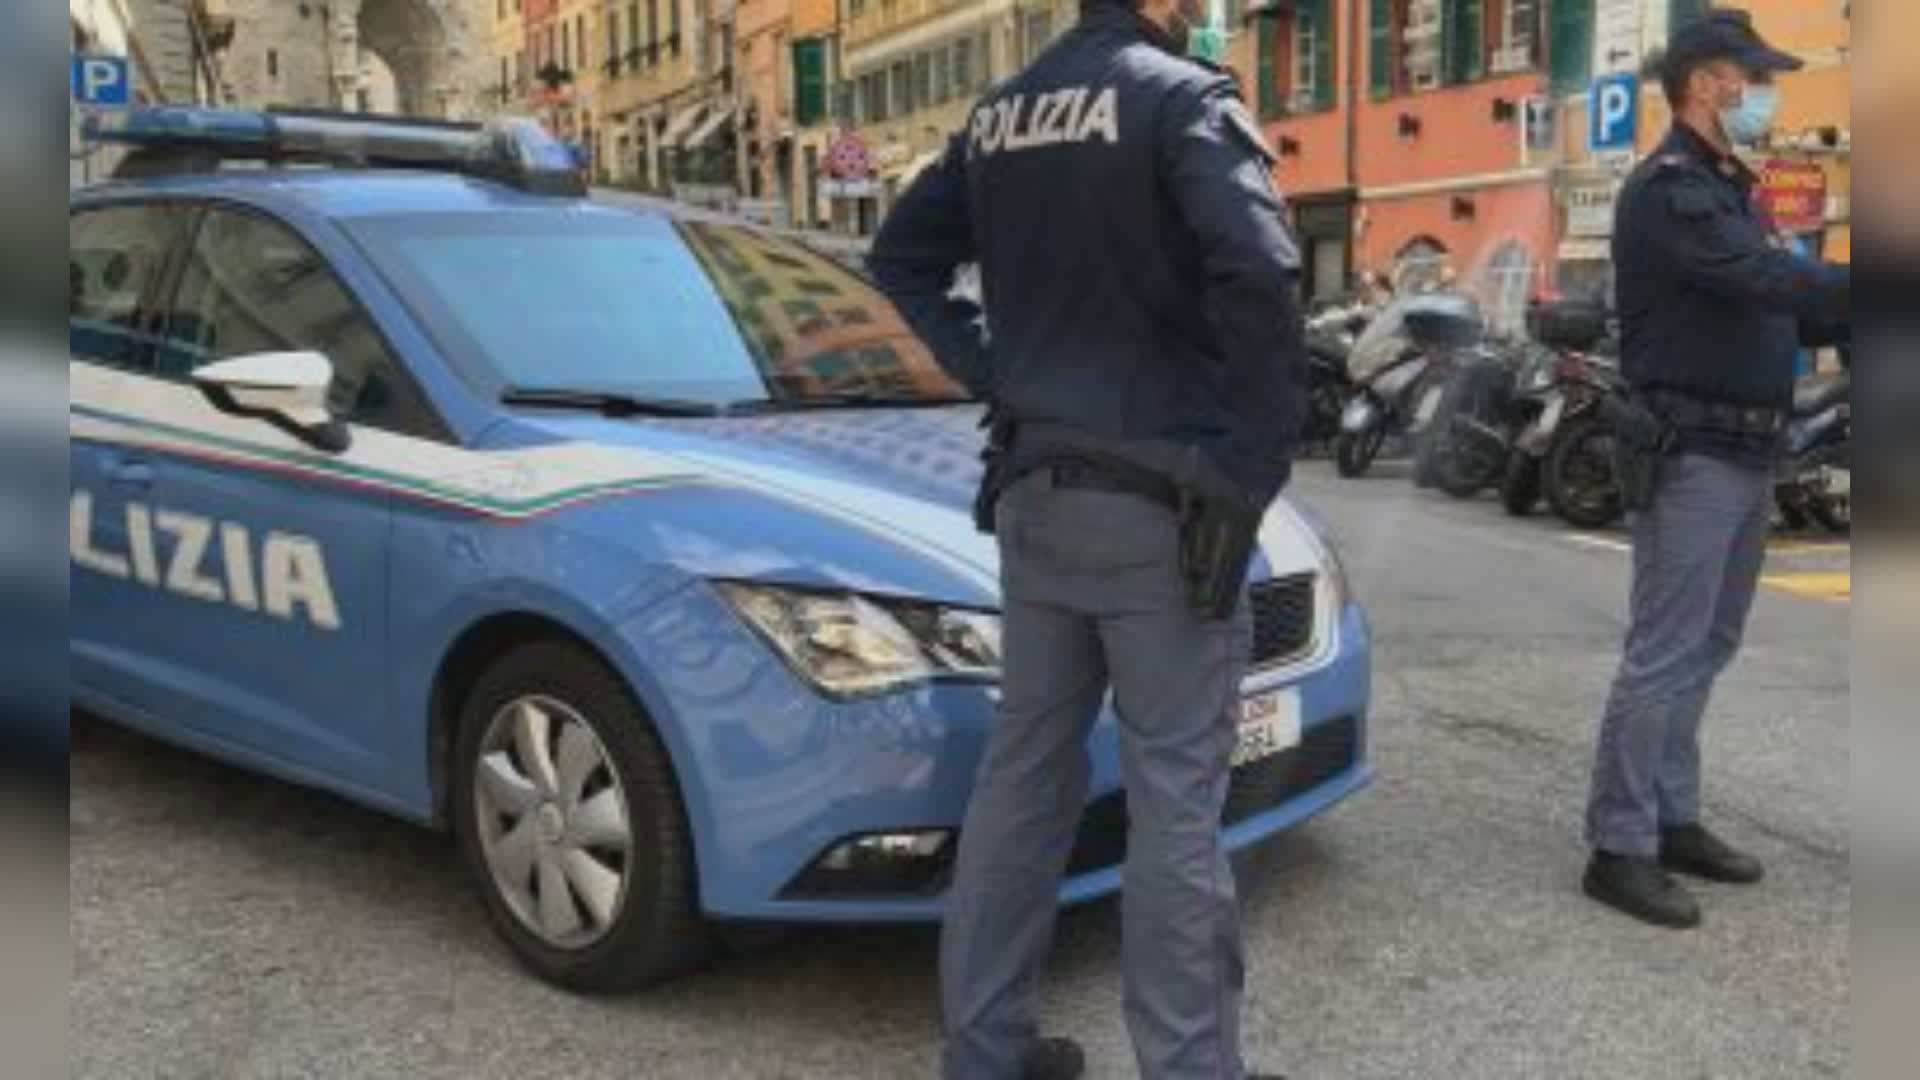 Genova: in cinque armati di coltello rapinano ragazzo a Caricamento in pieno giorno